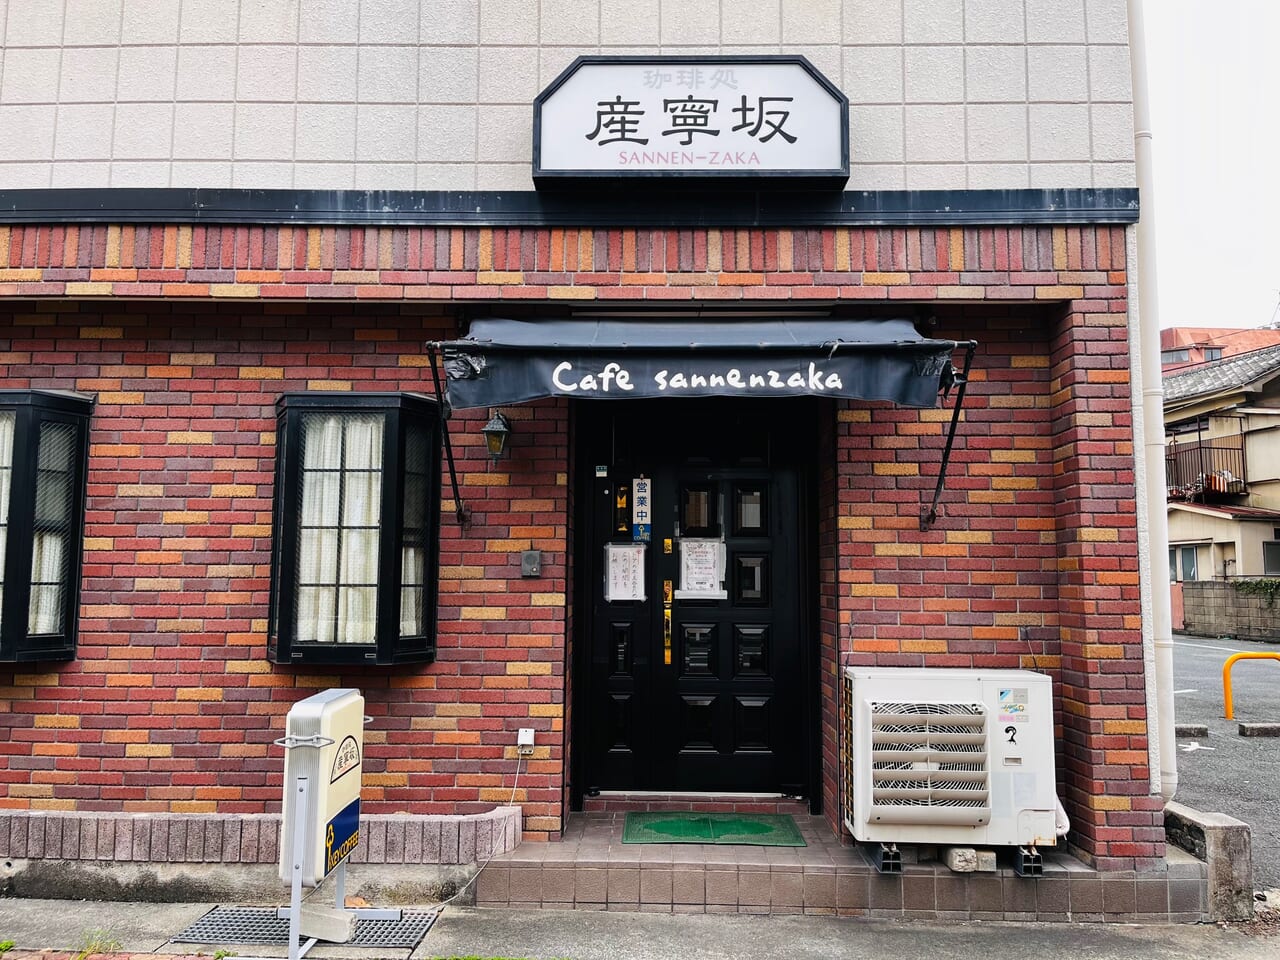 大牟田の昭和喫茶店「産寧坂」